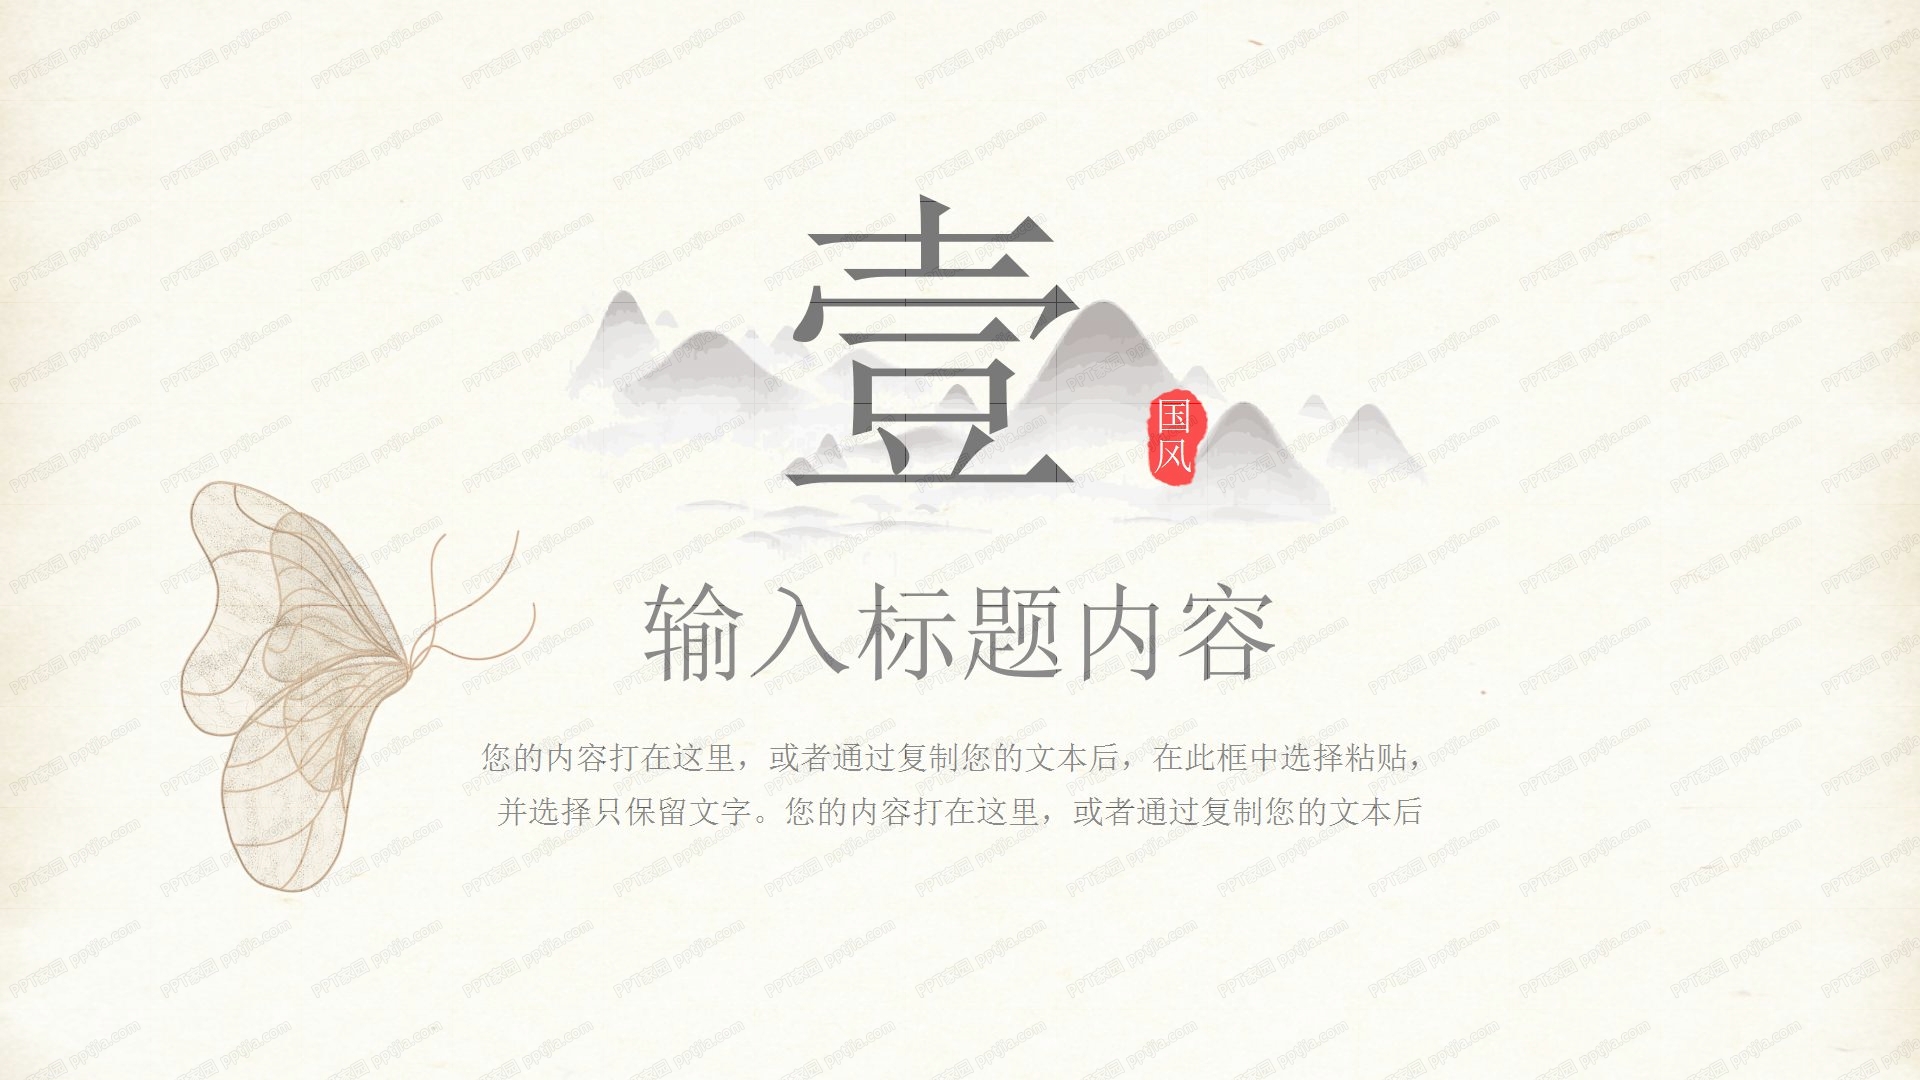 中国风蝴蝶刻画公司介绍企业宣传ppt模板